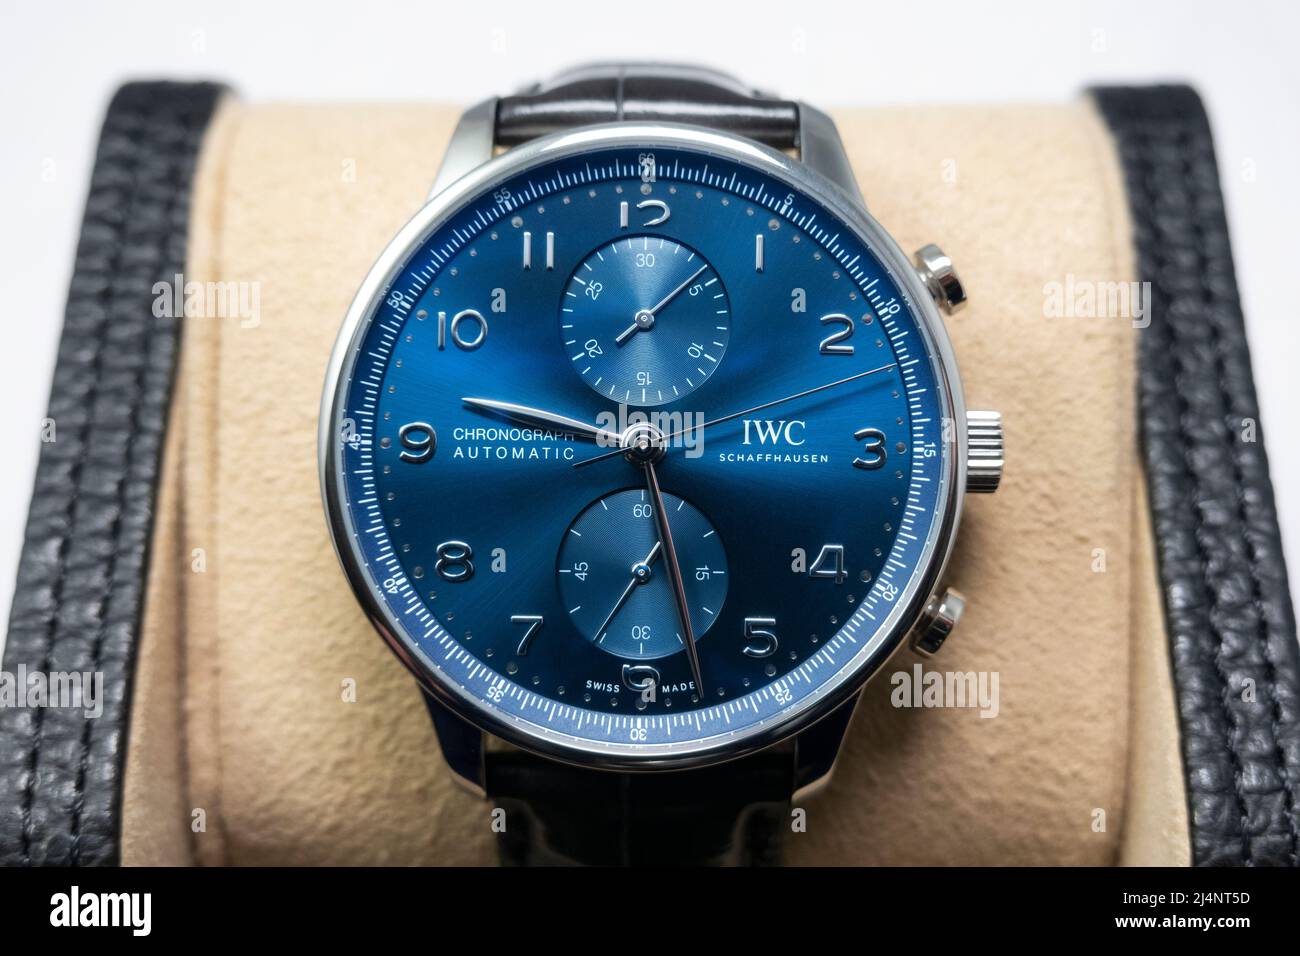 IWC Portugieser chronographe cadran bleu, montre de luxe suisse Banque D'Images